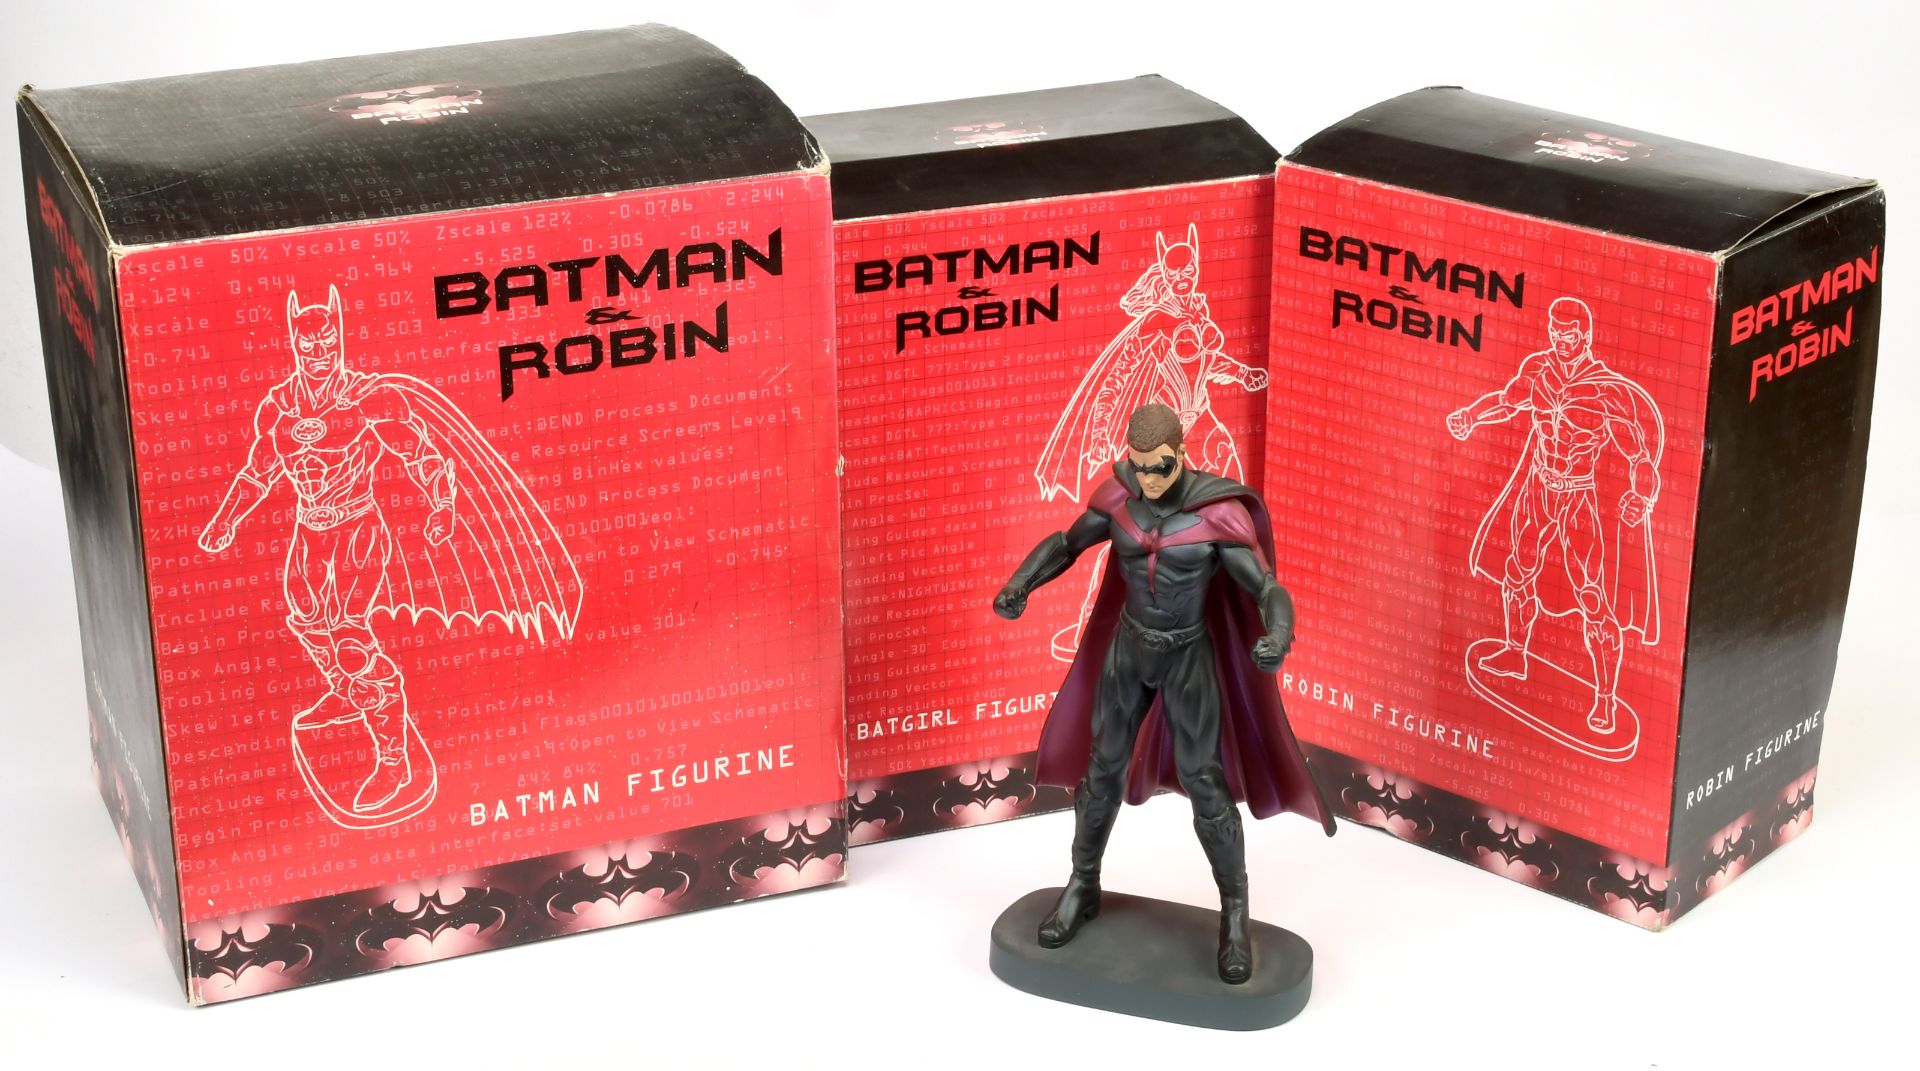 Warner Brothers Studio Store Batman & Robin figurines x three